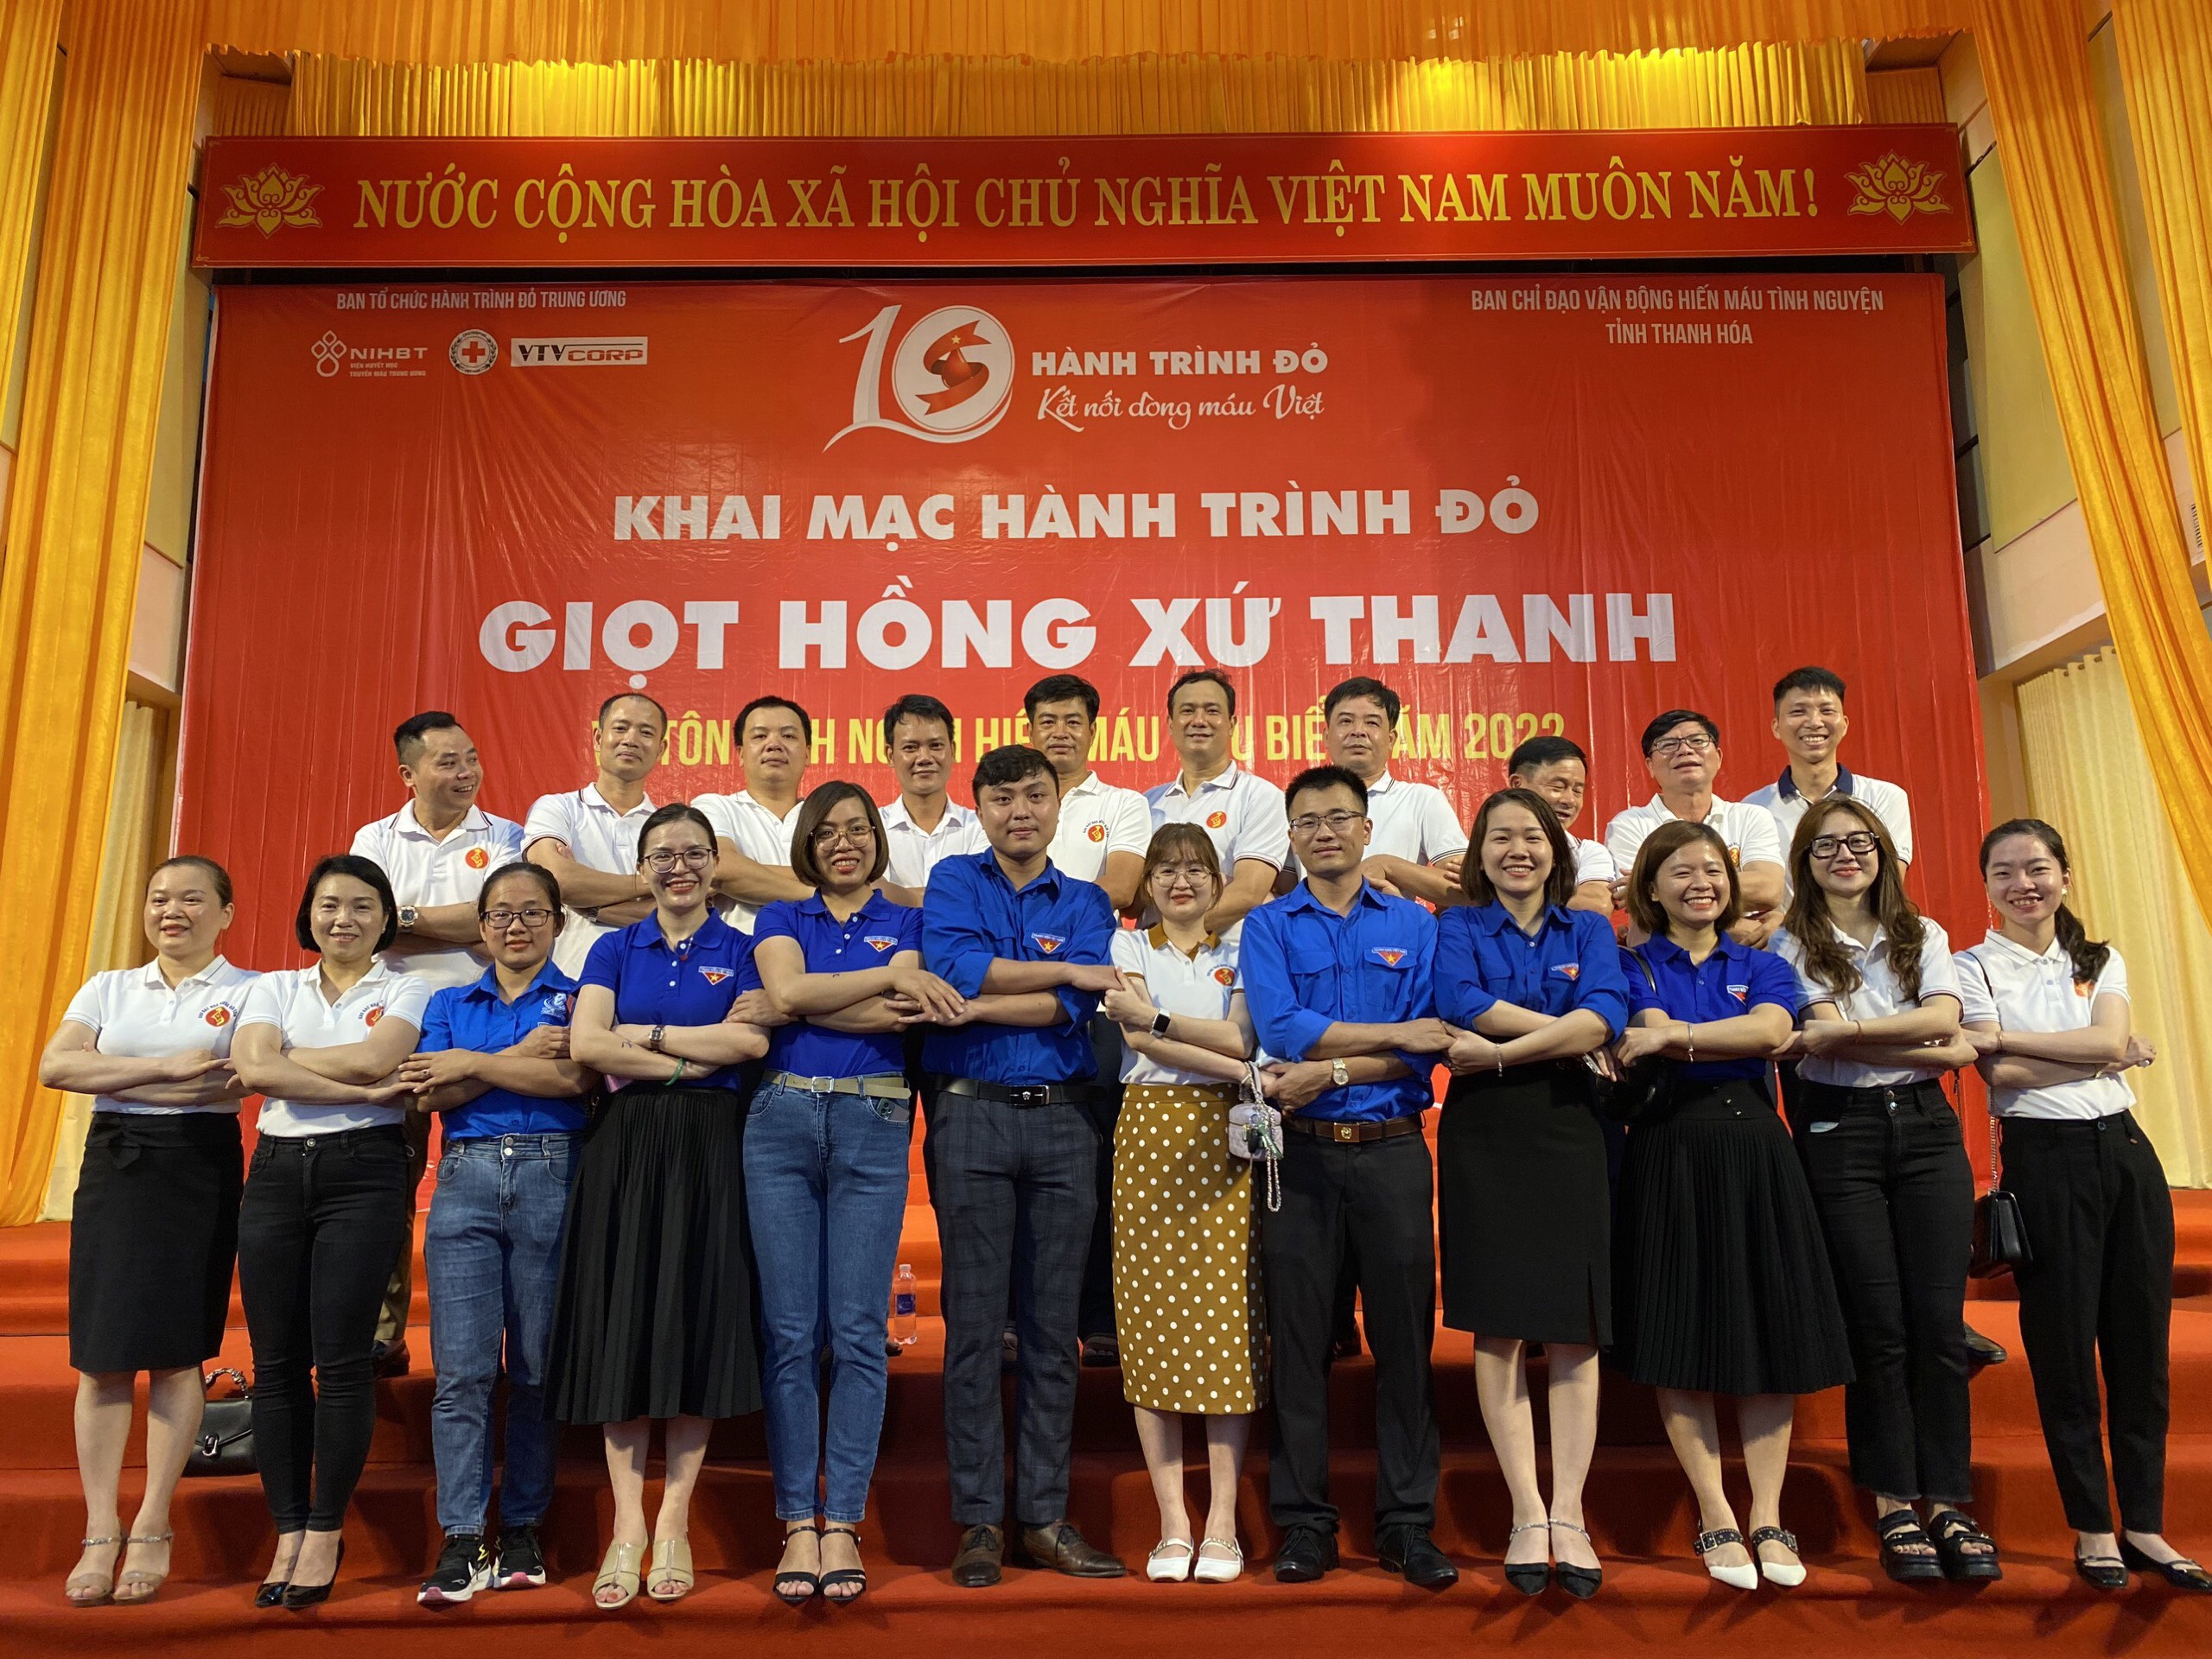 Tuổi trẻ Đoàn Khối tích cực tham gia hiến máu tình nguyện tại chương trình “Hành trình đỏ - Kết nối dòng máu Việt” lần thứ 10 năm 2022.